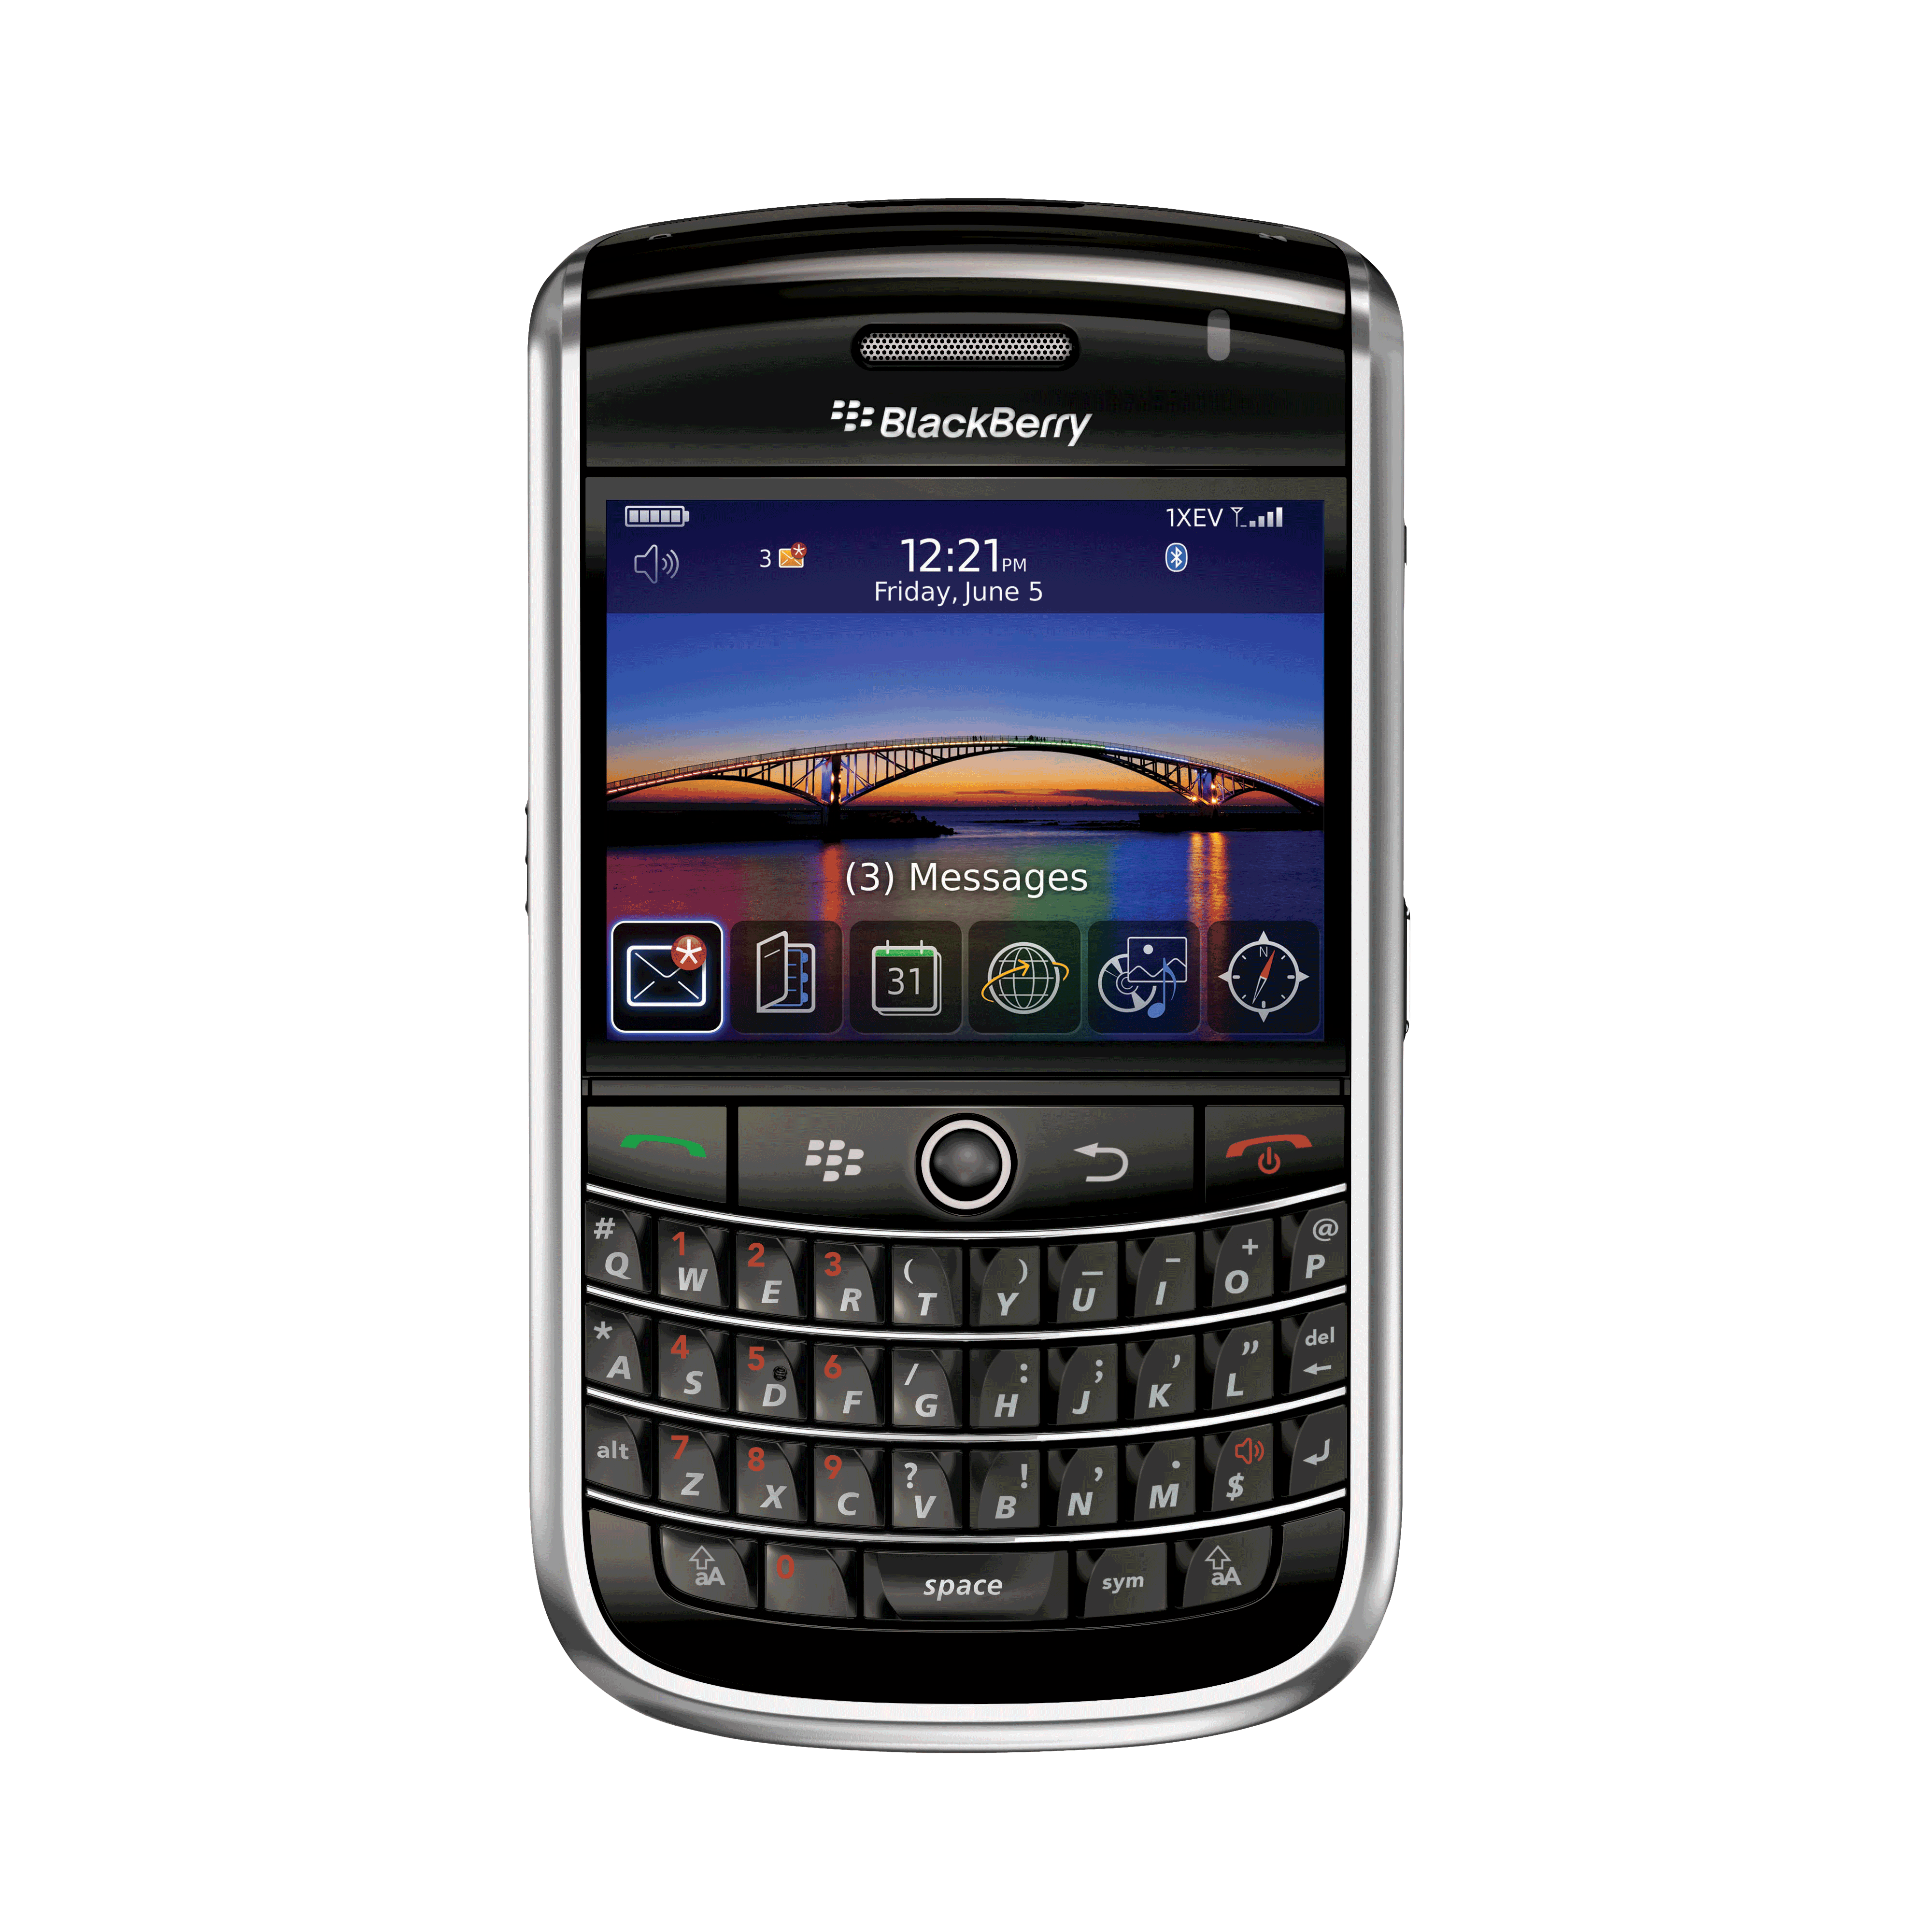 มาร์ทโฟน BlackBerry มือถือ PNG Pic